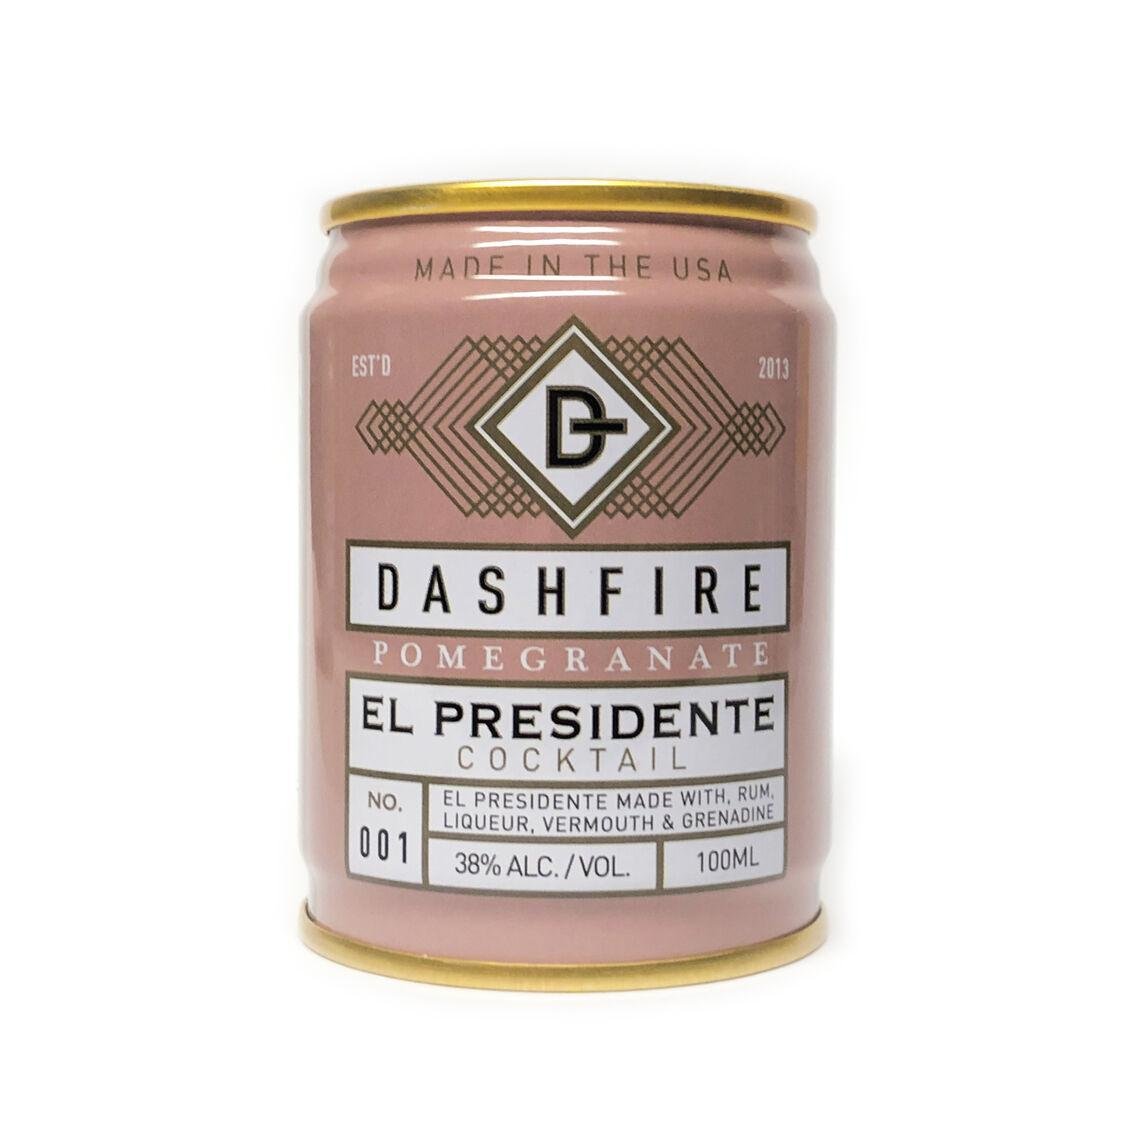 Dashfire - Pomegranate El Presidente Cocktail (100ML) - The Epicurean Trader